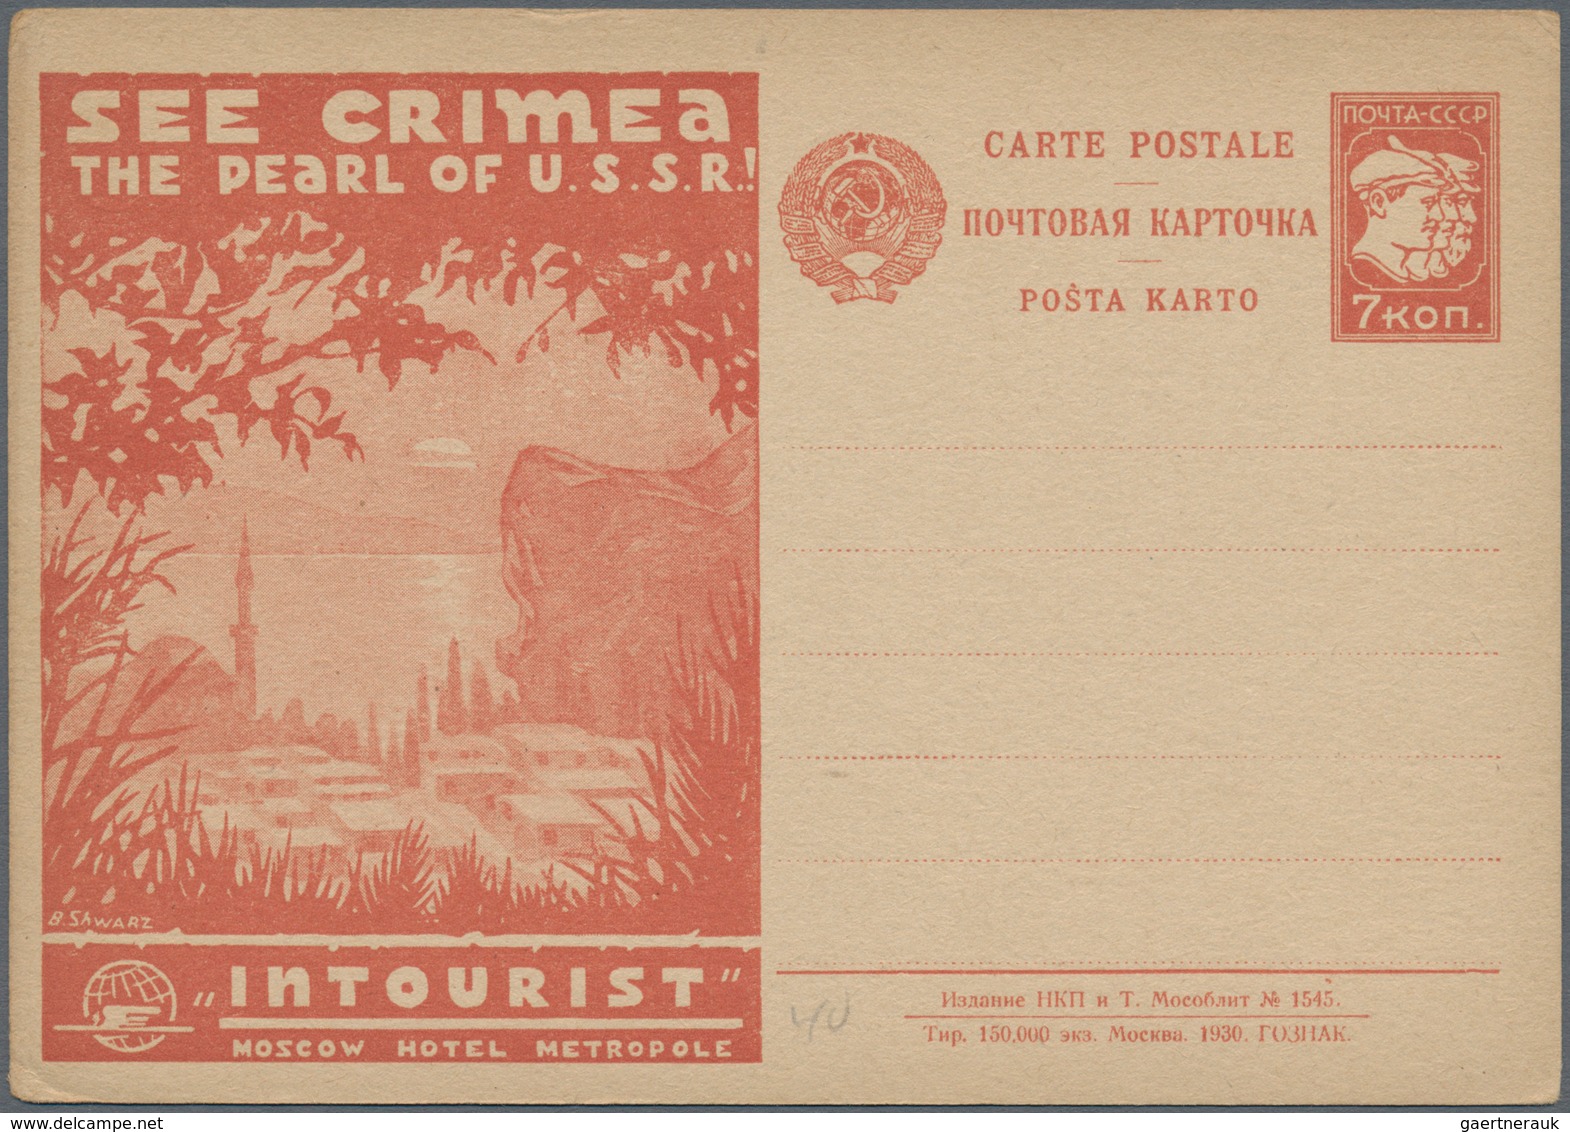 Sowjetunion - Ganzsachen: 1930, complete set of five Intourist-postcards in russian language Crimea,